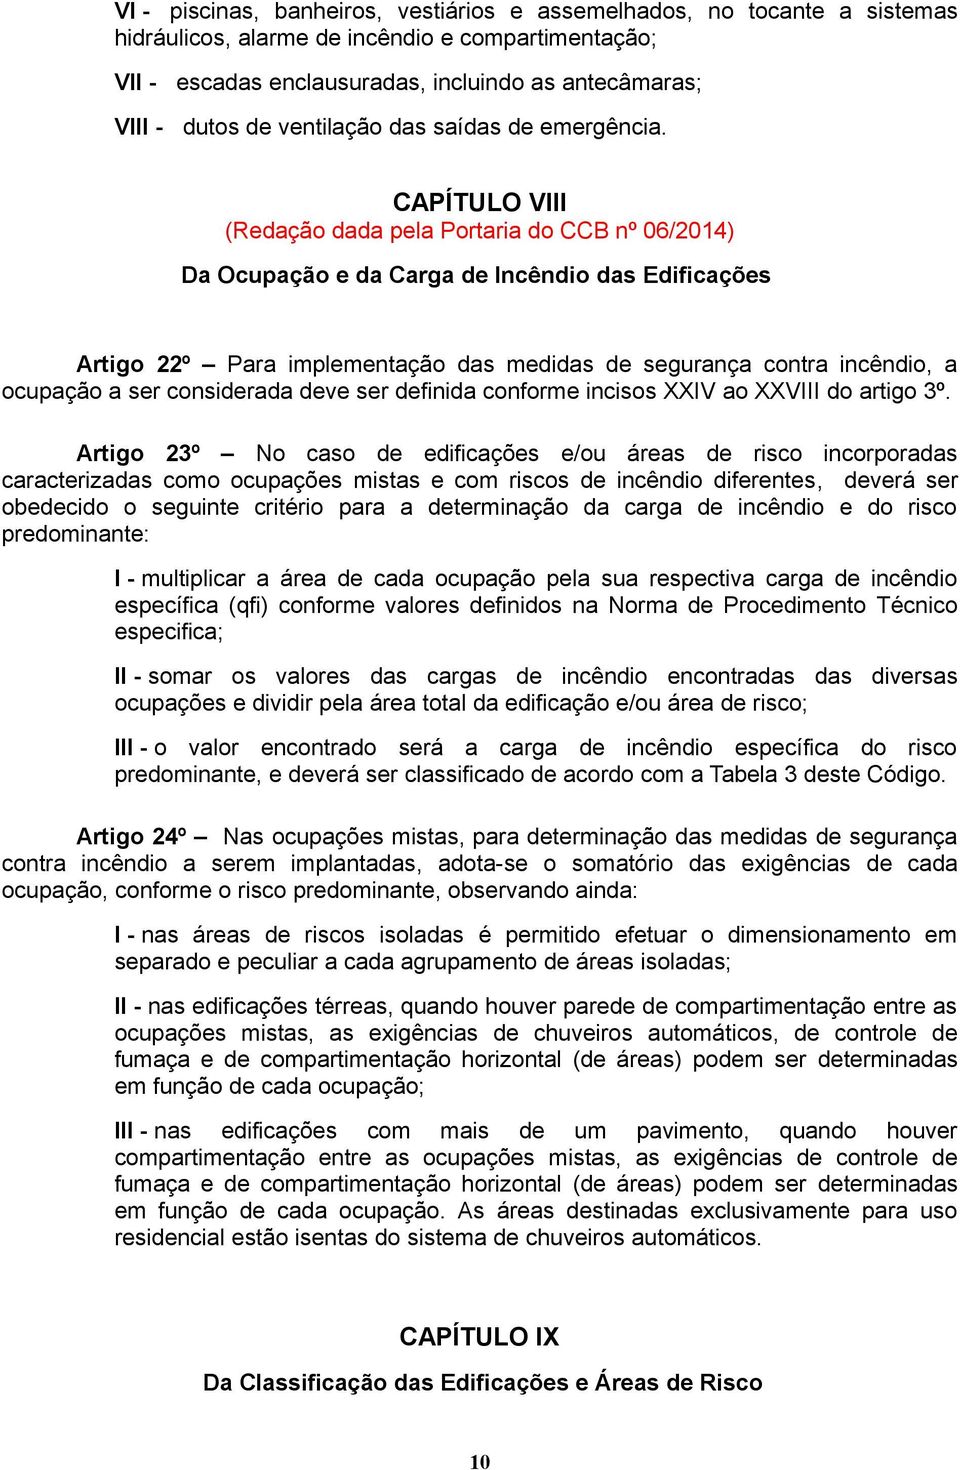 CAPÍTULO VIII (Redação dada pela Portaria do CCB nº 06/2014) Da Ocupação e da Carga de das Edificações Artigo 22º Para implementação das medidas de segurança contra incêndio, a ocupação a ser